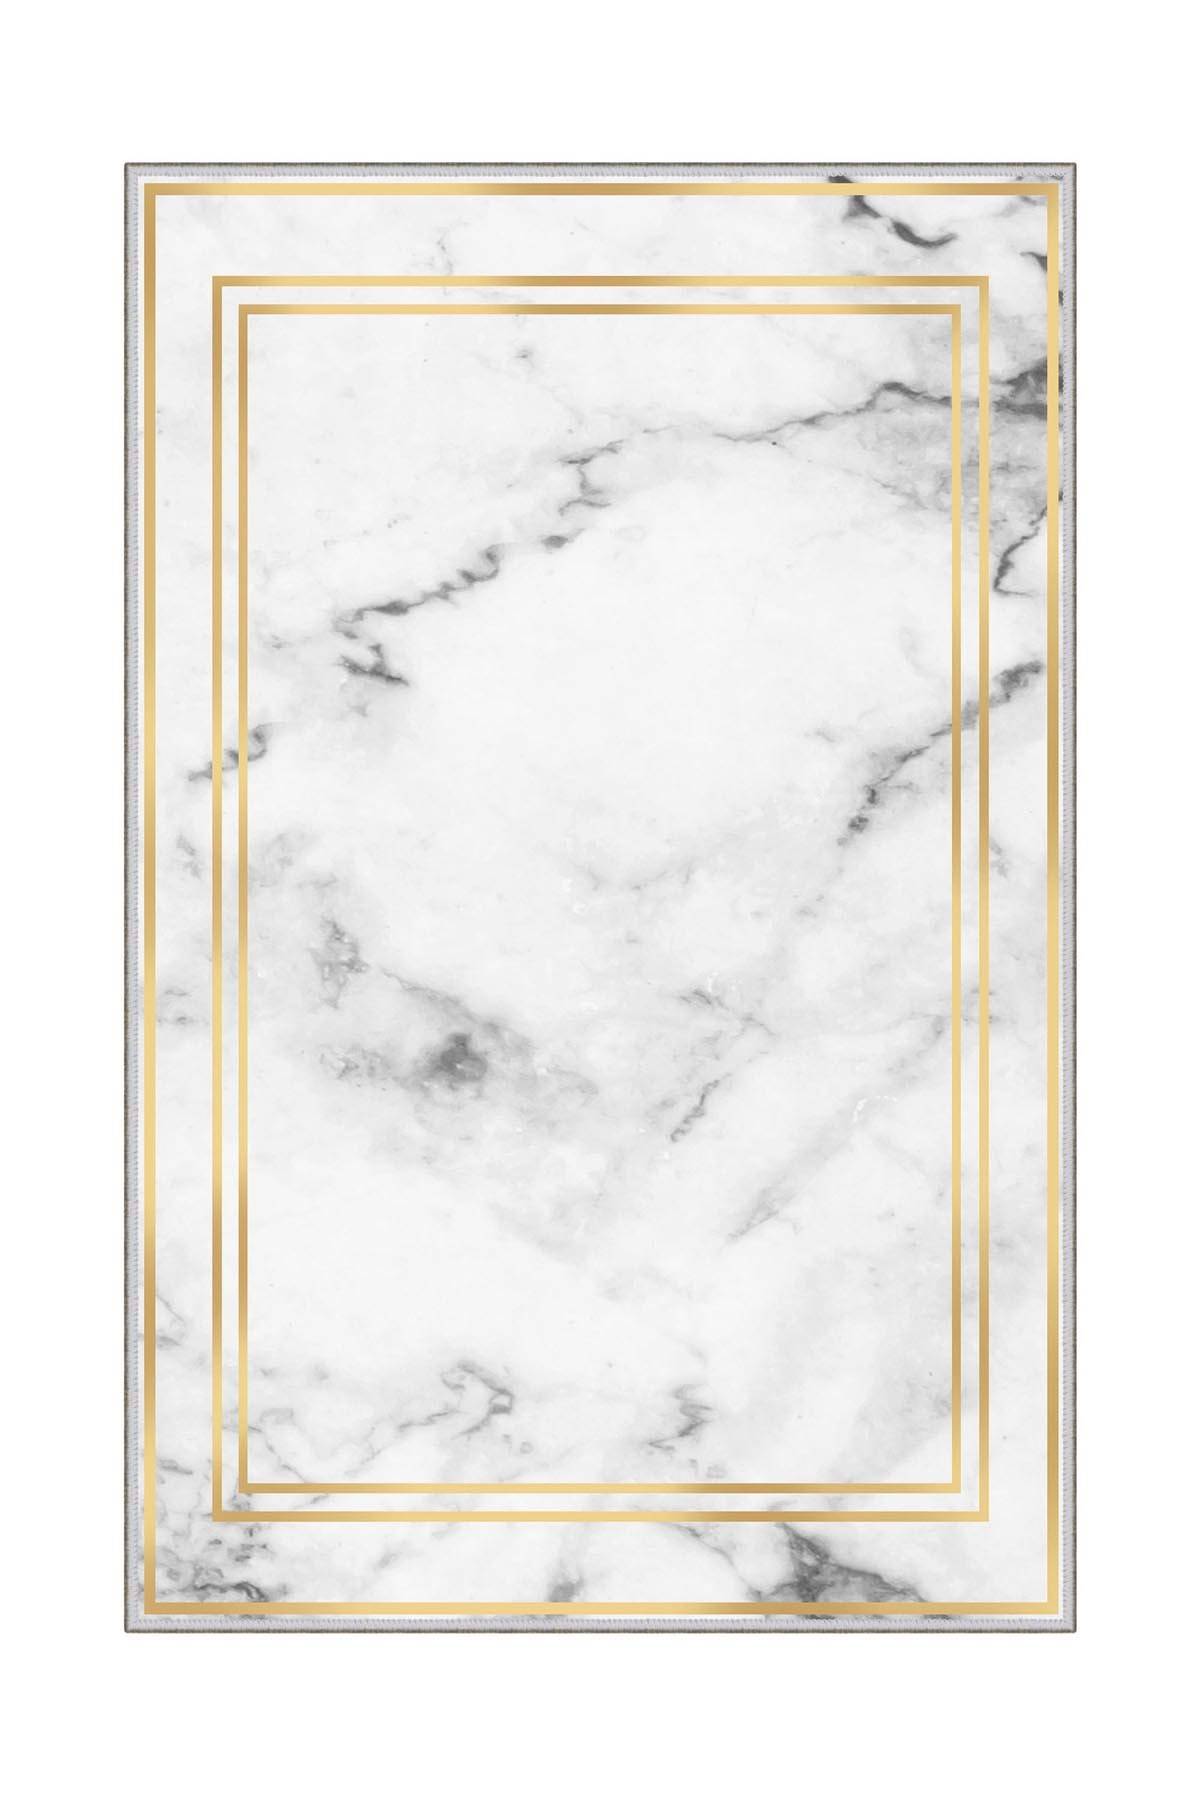 Ozos Teppich 50x80cm Weiß Marmoreffekt und Goldrahmen